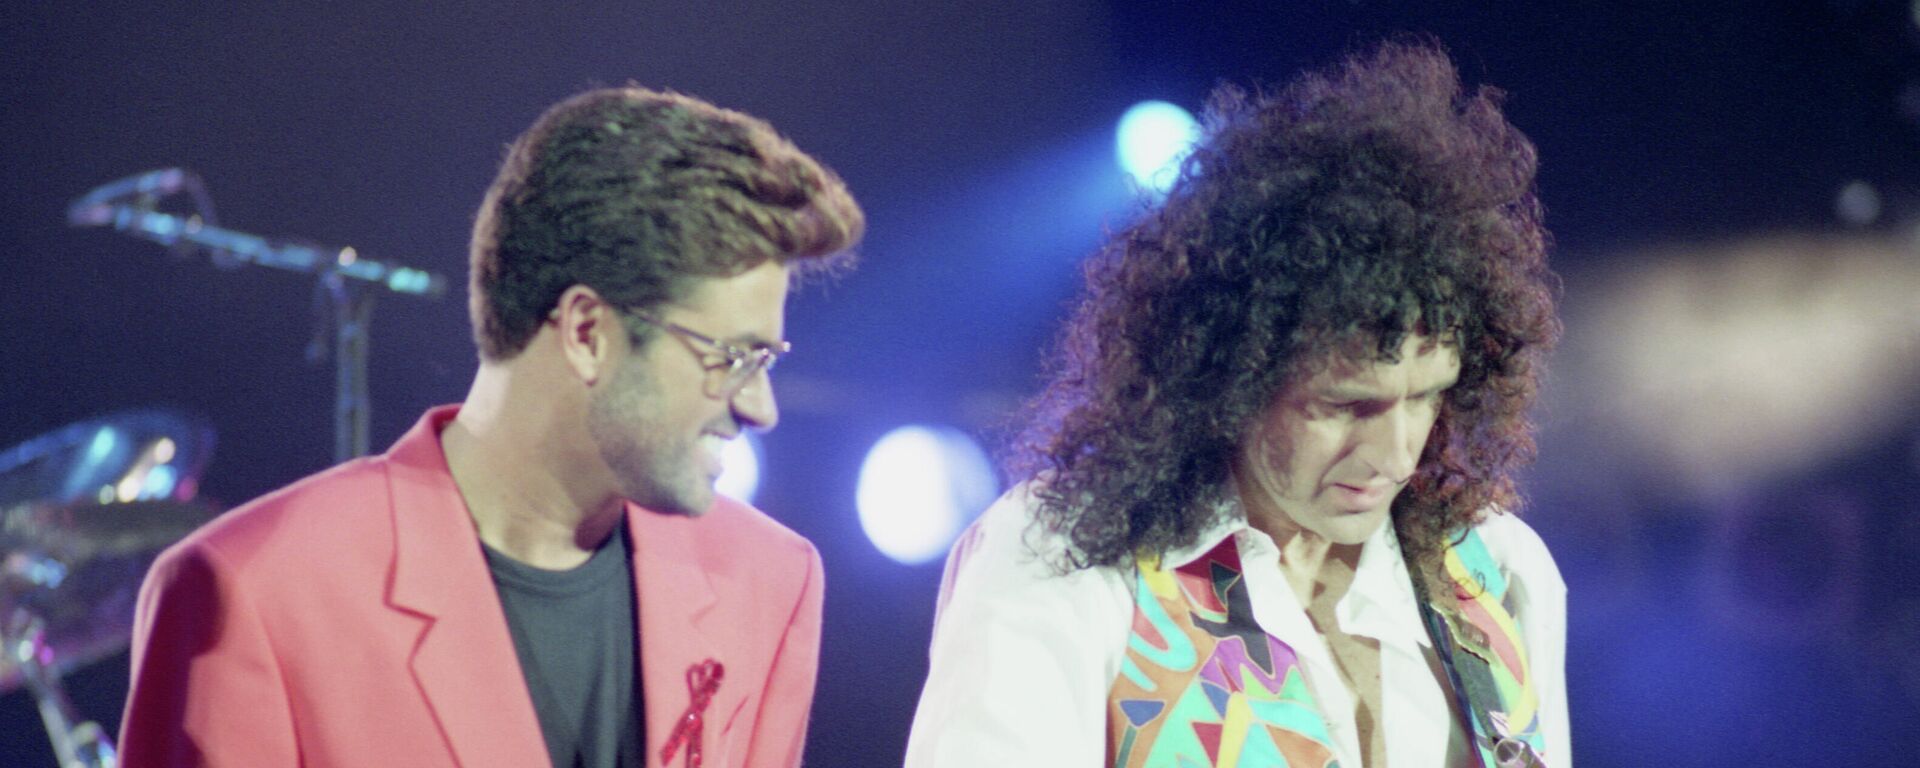 George Michael junto a Brian May en el concierto homenaje a Freddie Mercury, en 1992 - Sputnik Mundo, 1920, 25.02.2021